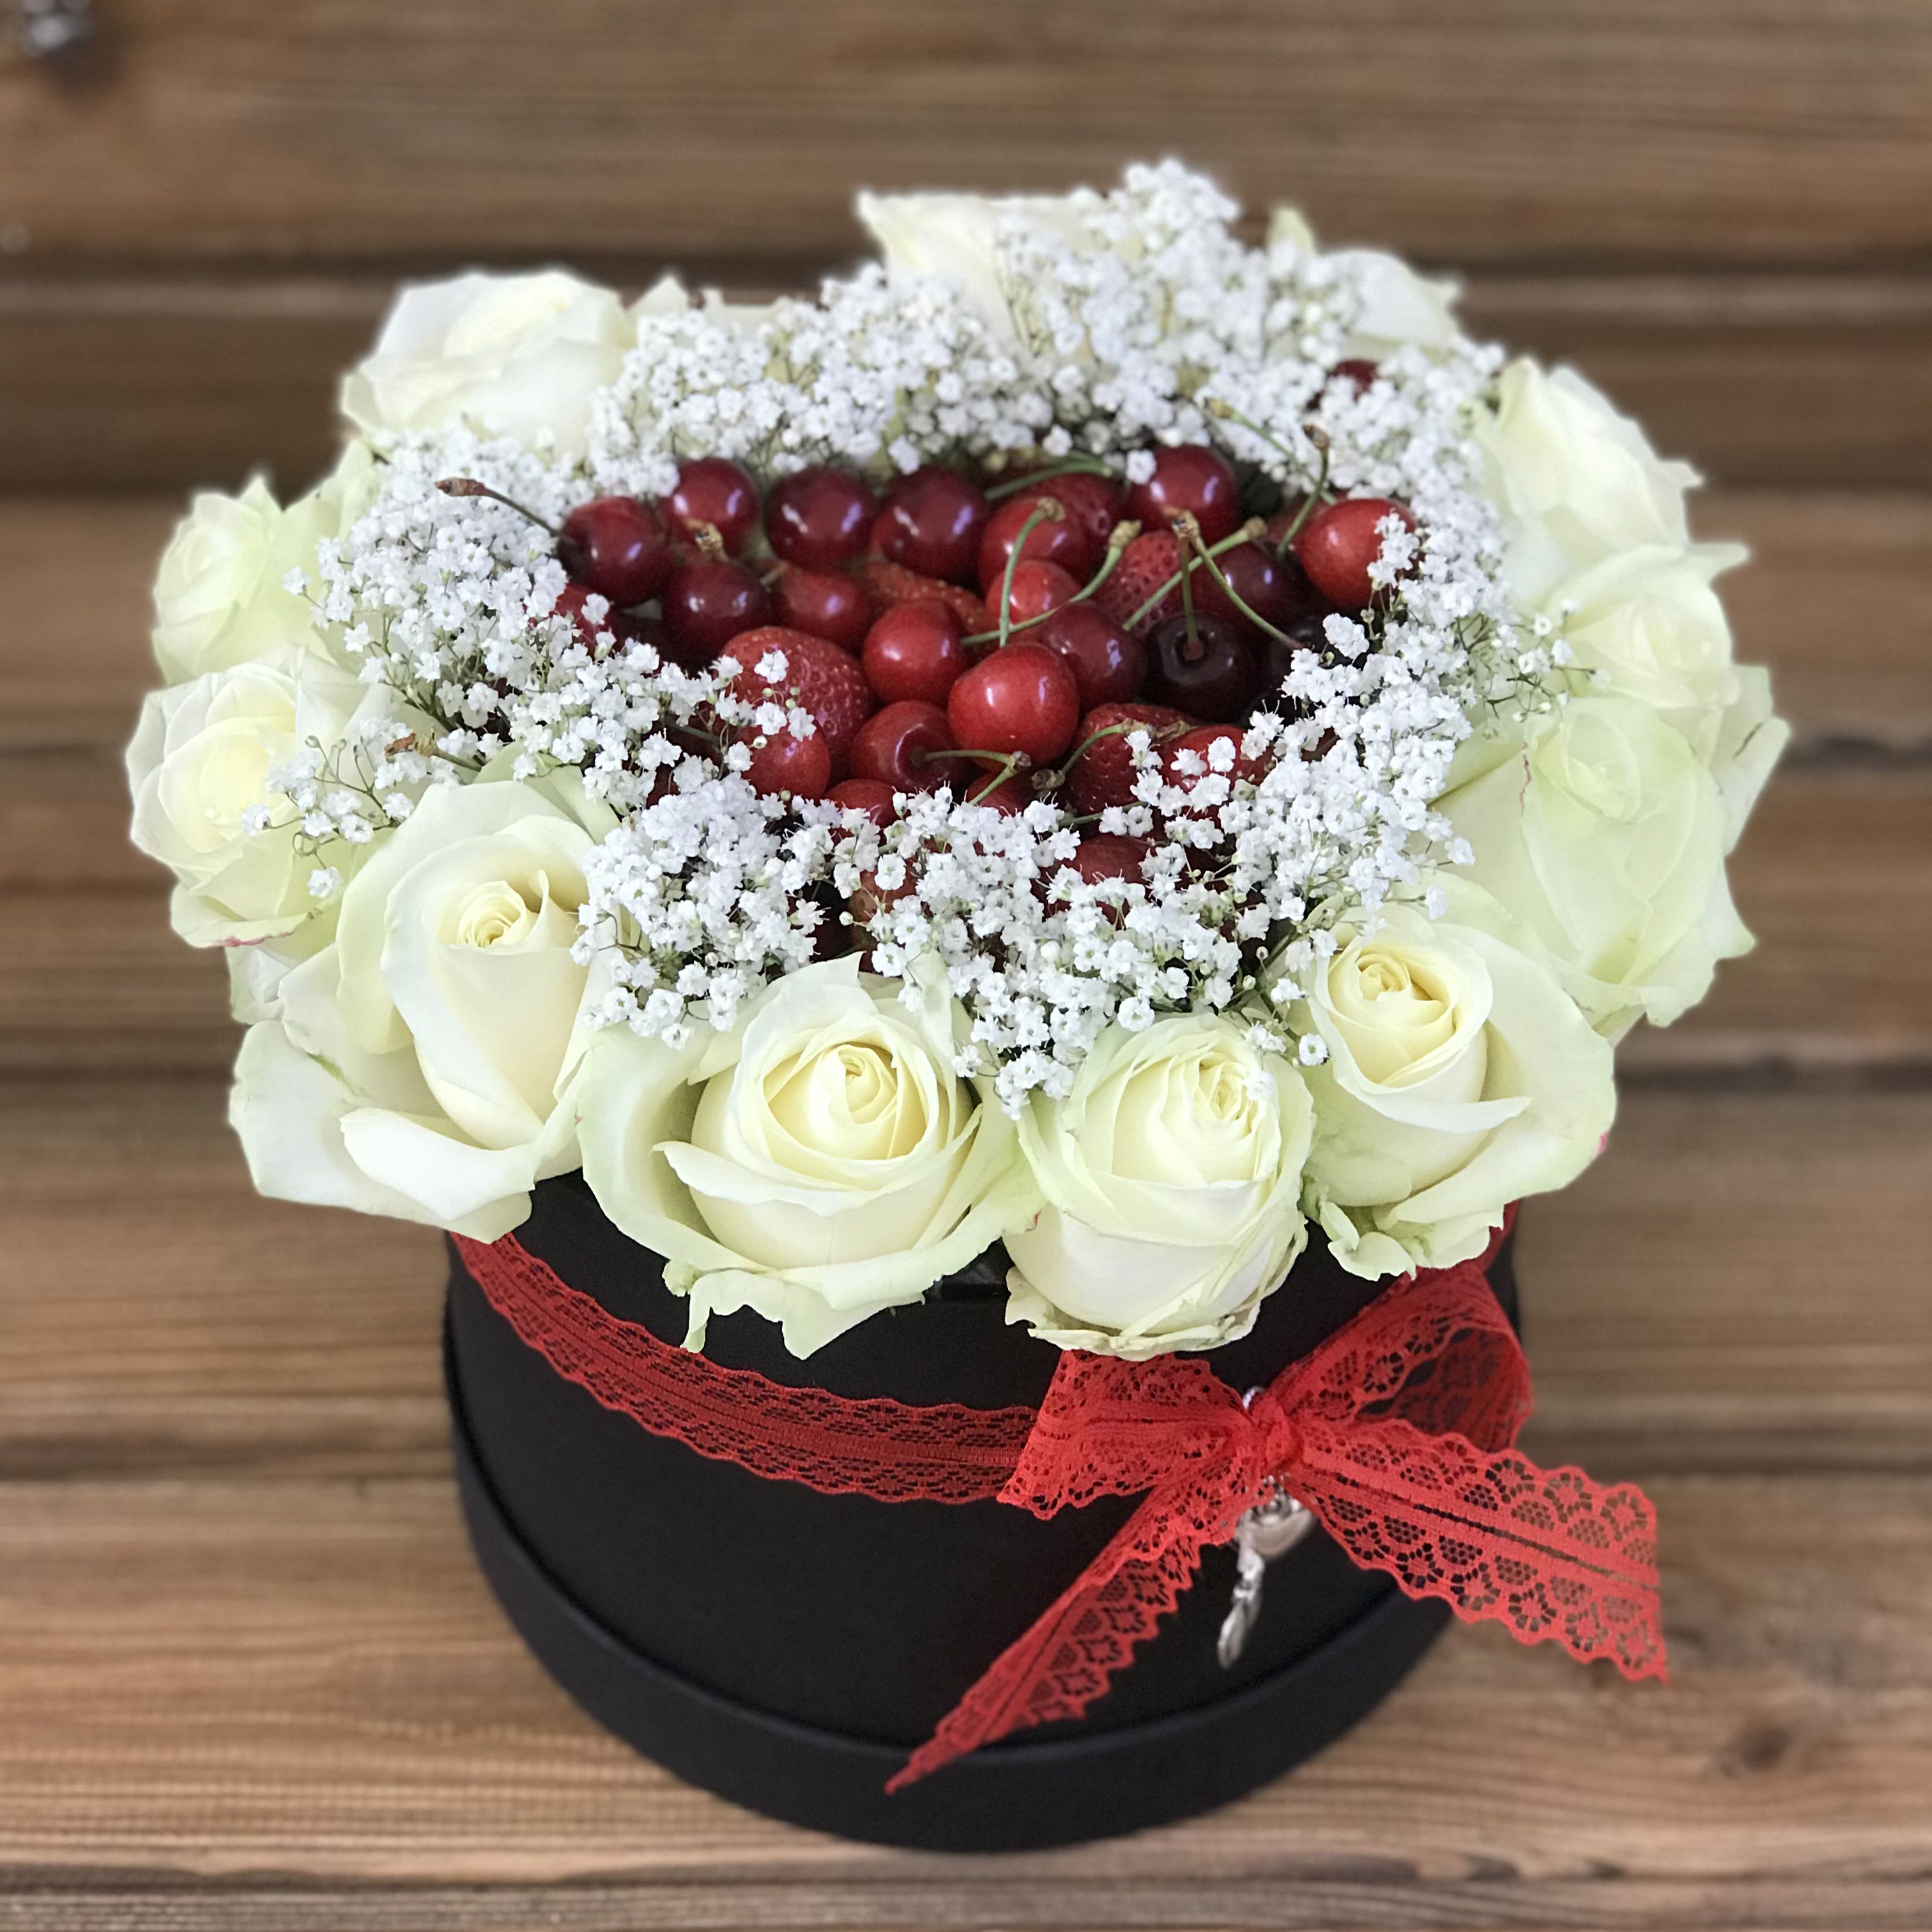 Flower box with berries Flower box with berries